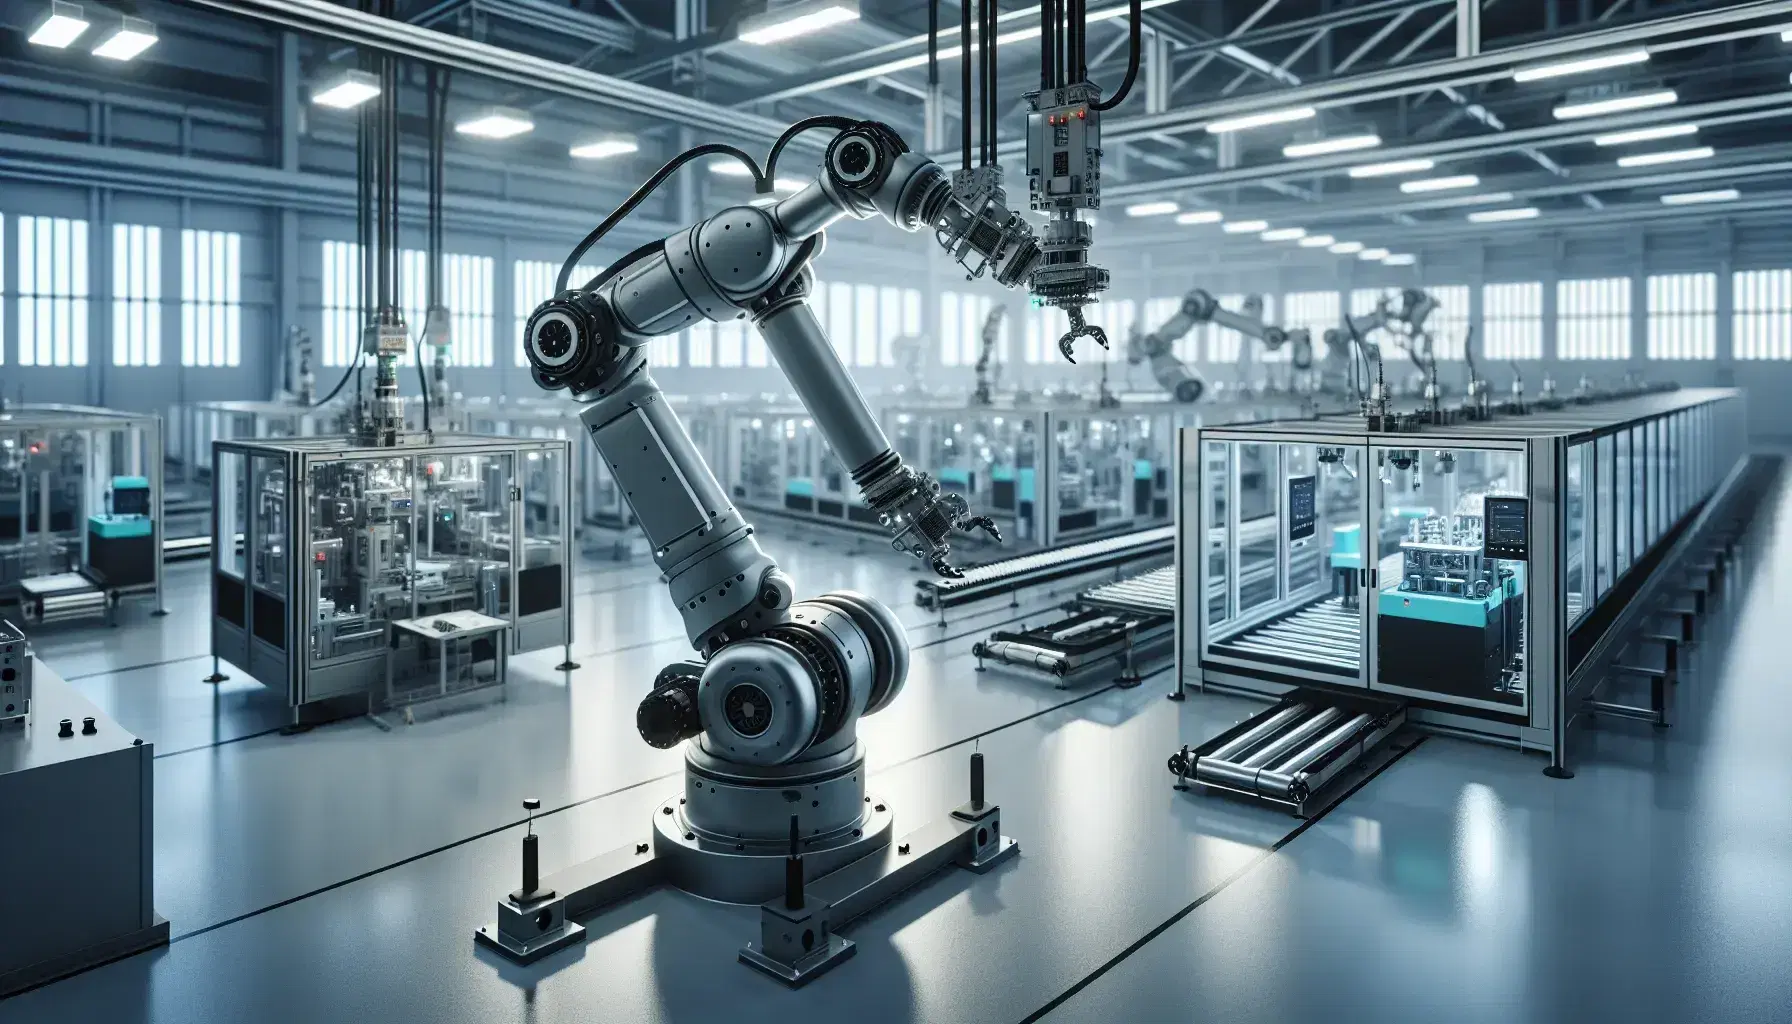 Brazo robótico industrial manipulando pieza de maquinaria en fábrica automatizada con cintas transportadoras y luces fluorescentes.